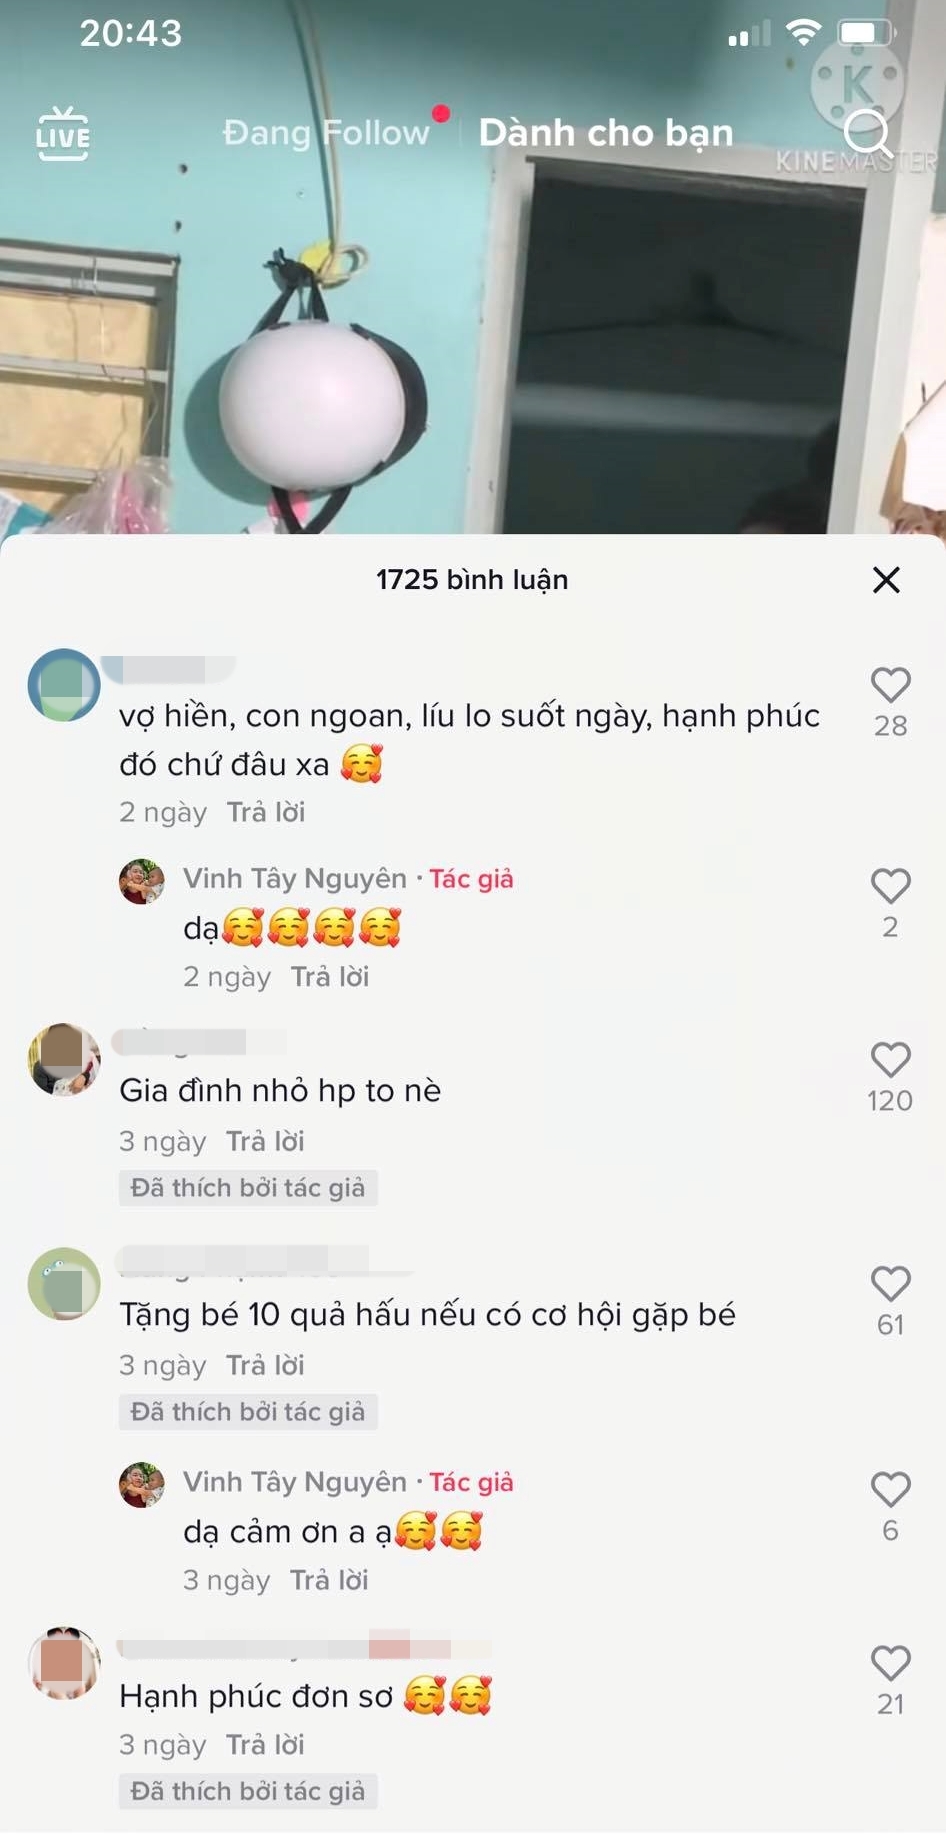  
Netizen không kìm né được xúc động khi xem video (Ảnh chụp màn hình)